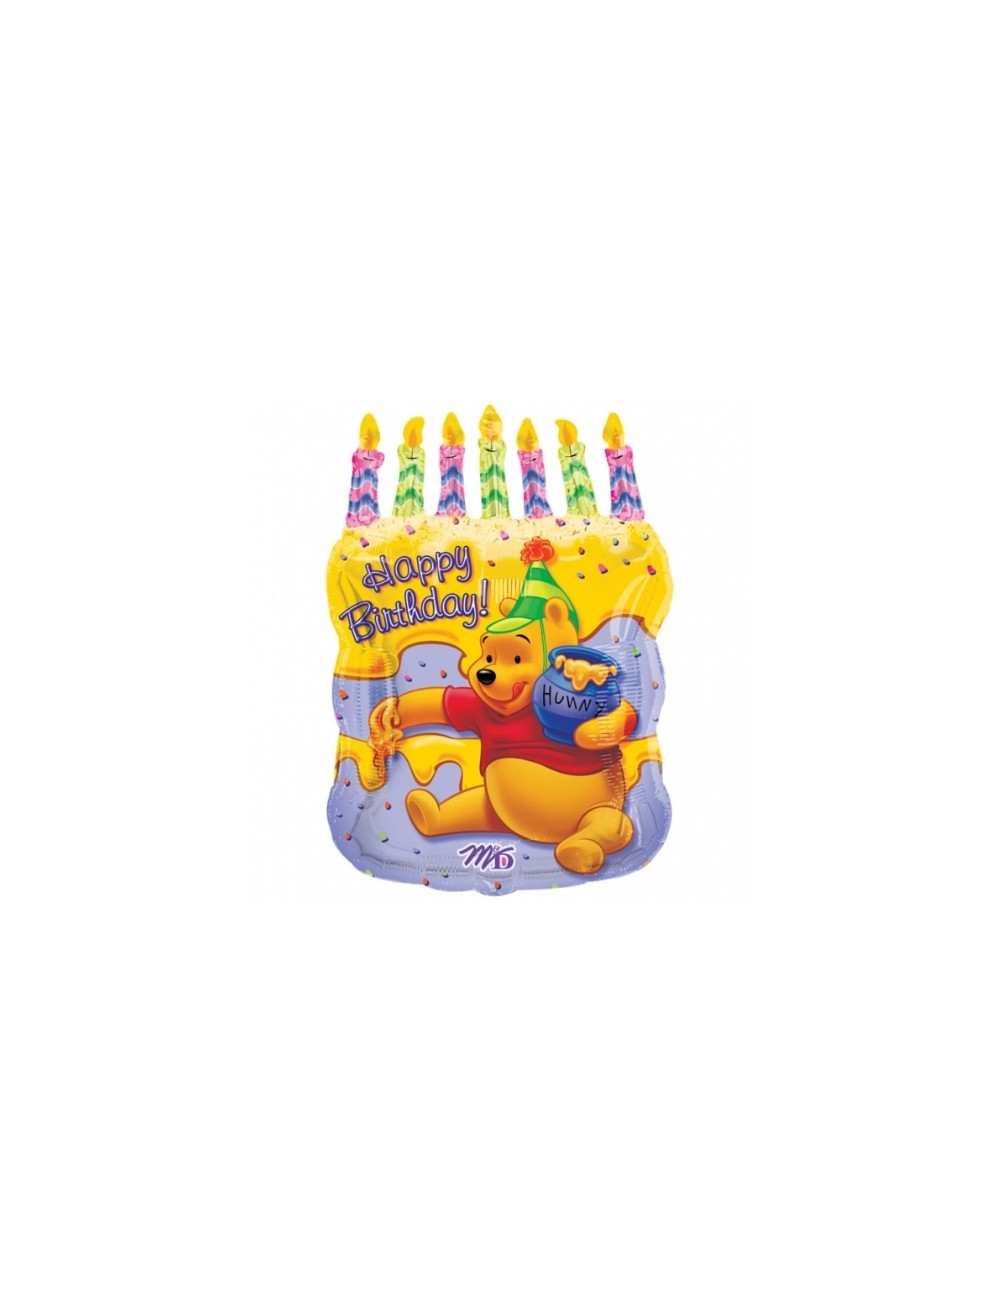 Ballon 'Happy Birthday' Winnie l'ourson